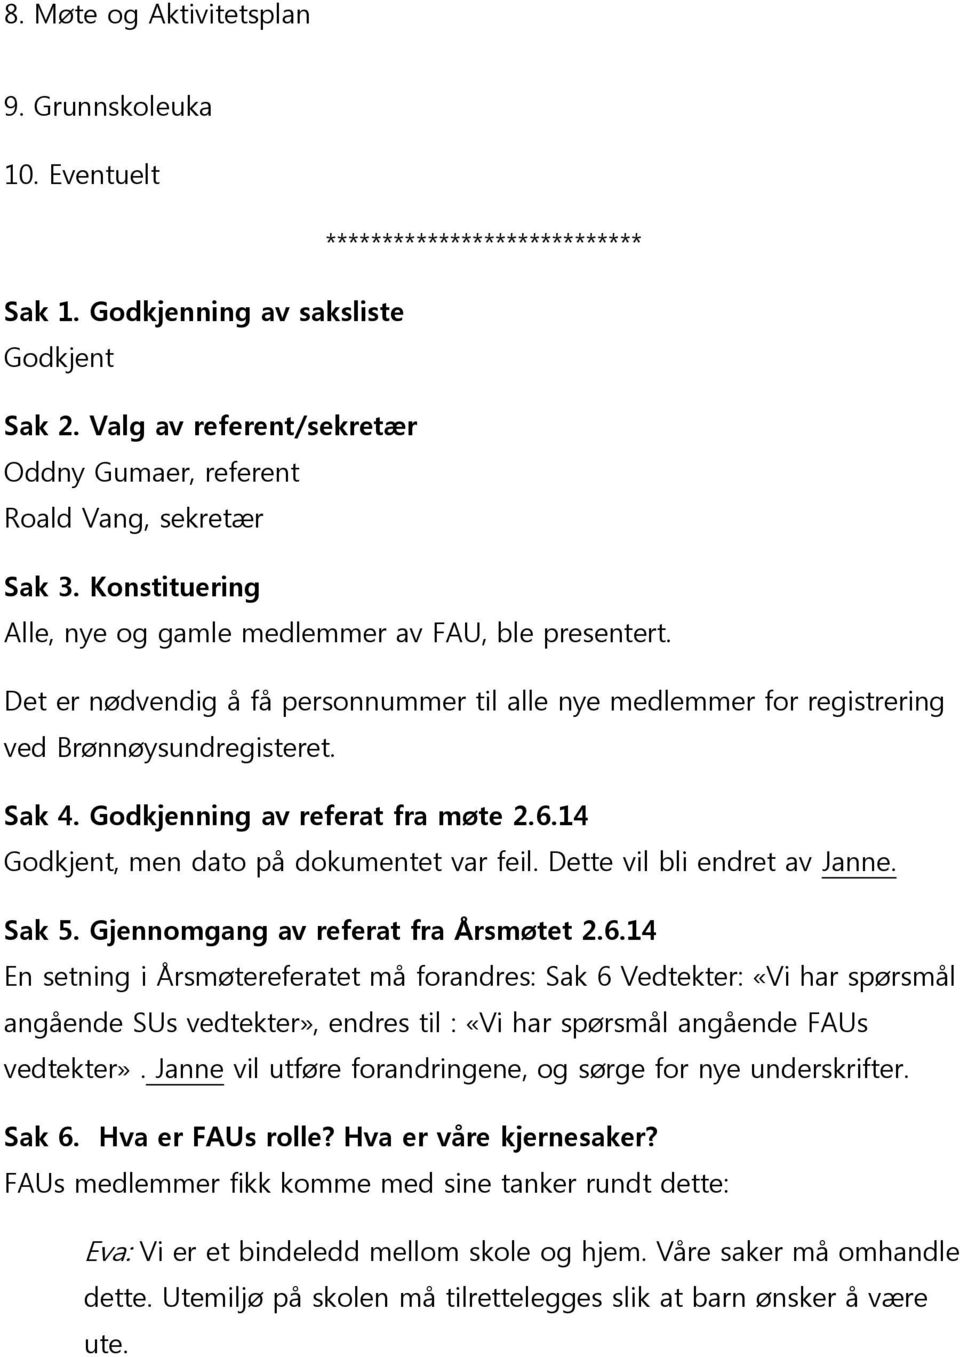 Det er nødvendig å få personnummer til alle nye medlemmer for registrering ved Brønnøysundregisteret. Sak 4. Godkjenning av referat fra møte 2.6.14 Godkjent, men dato på dokumentet var feil.